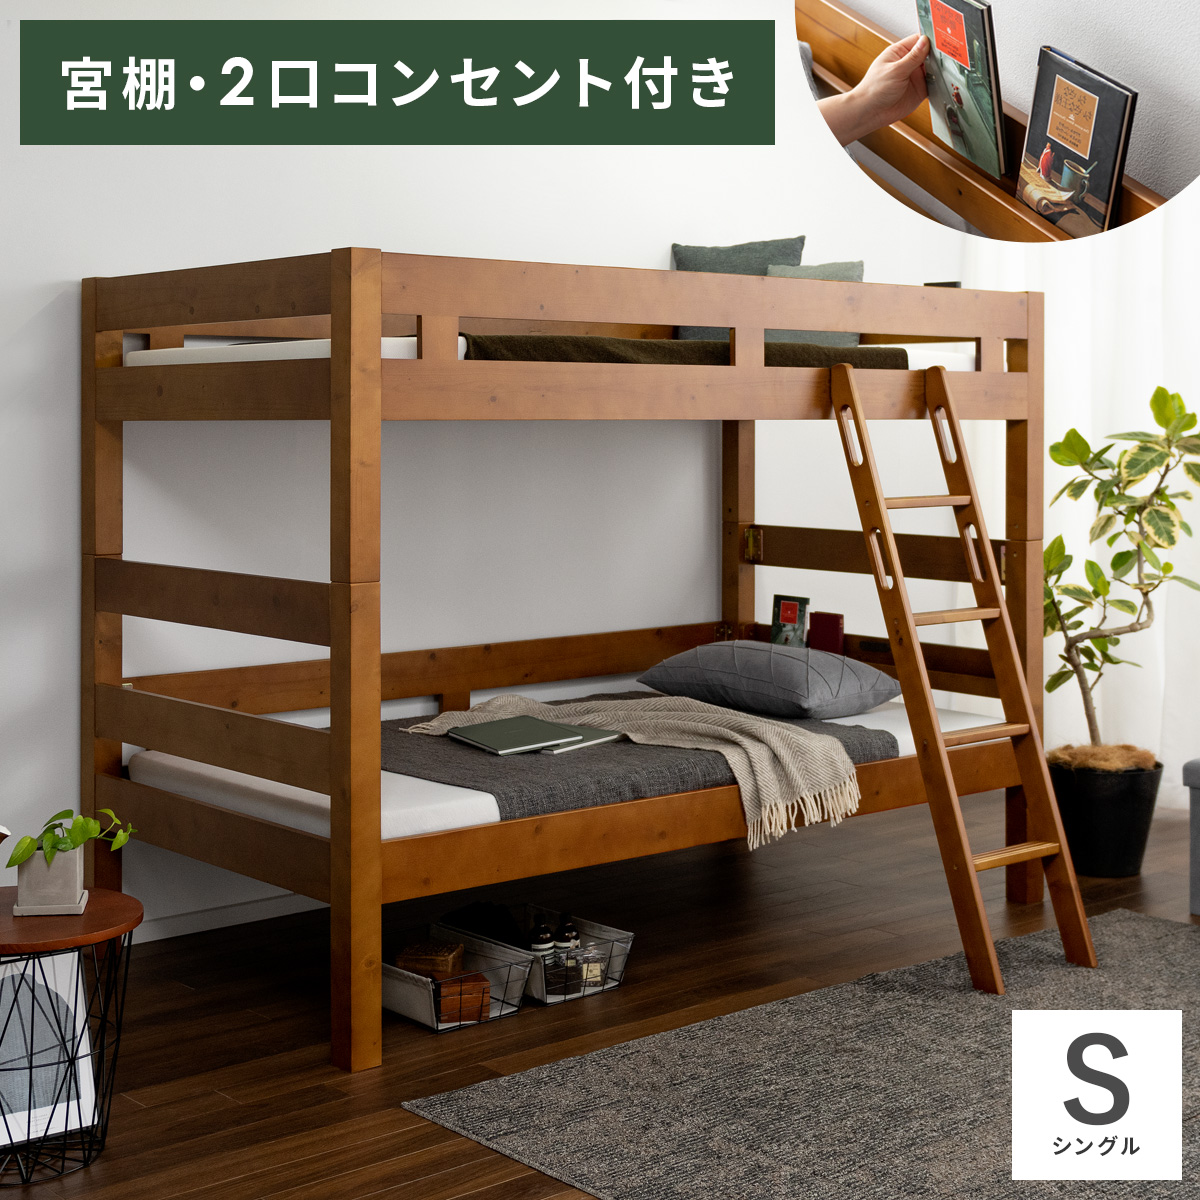 2段ベッド すのこベッド ダブル シングル シングル・ダブル2段ベッド 通販